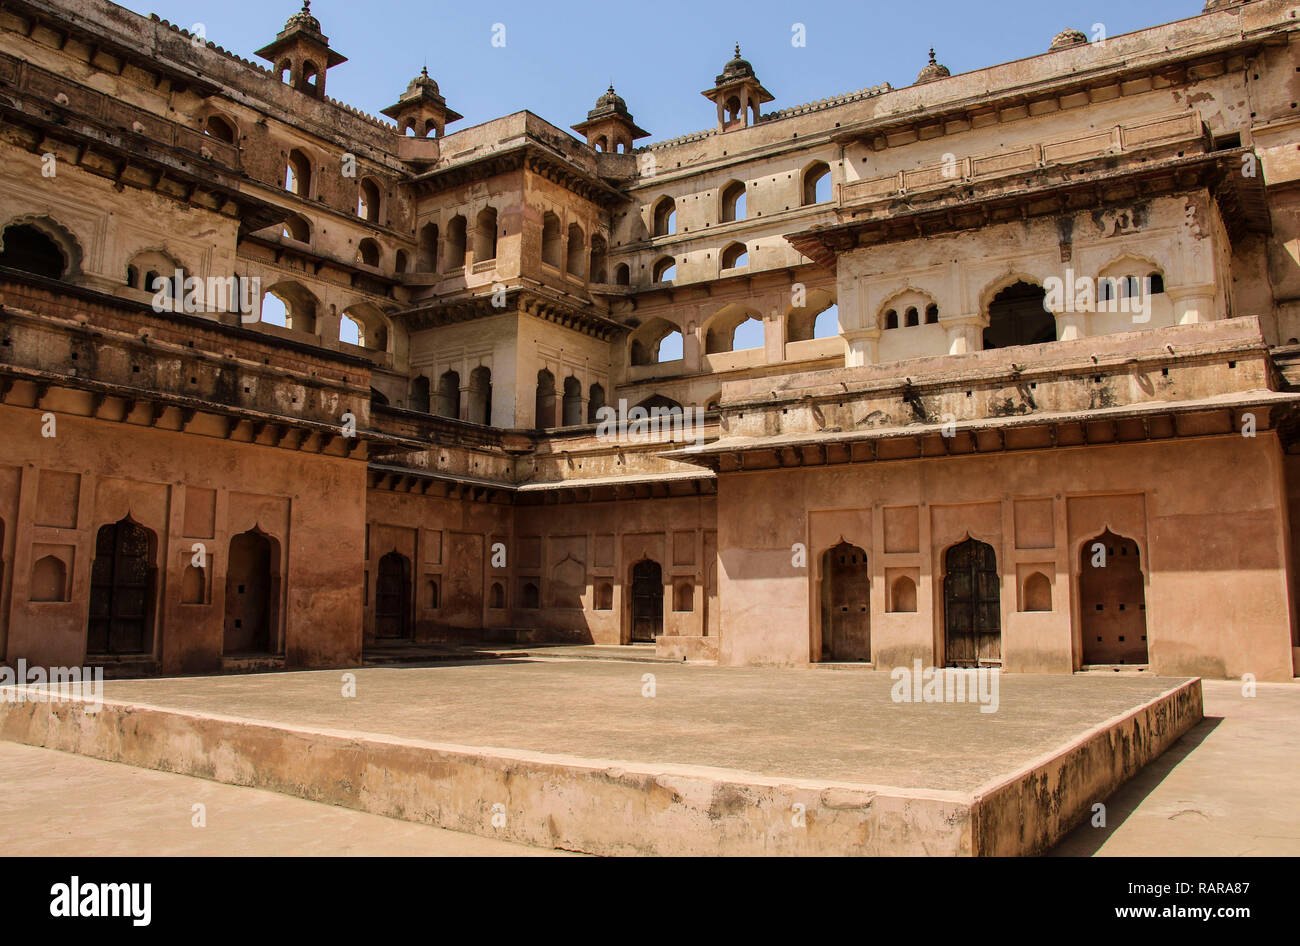 Orchha fort (Jahangir Mahal), Orchha, Madhya Pradesh, India Stock Photo